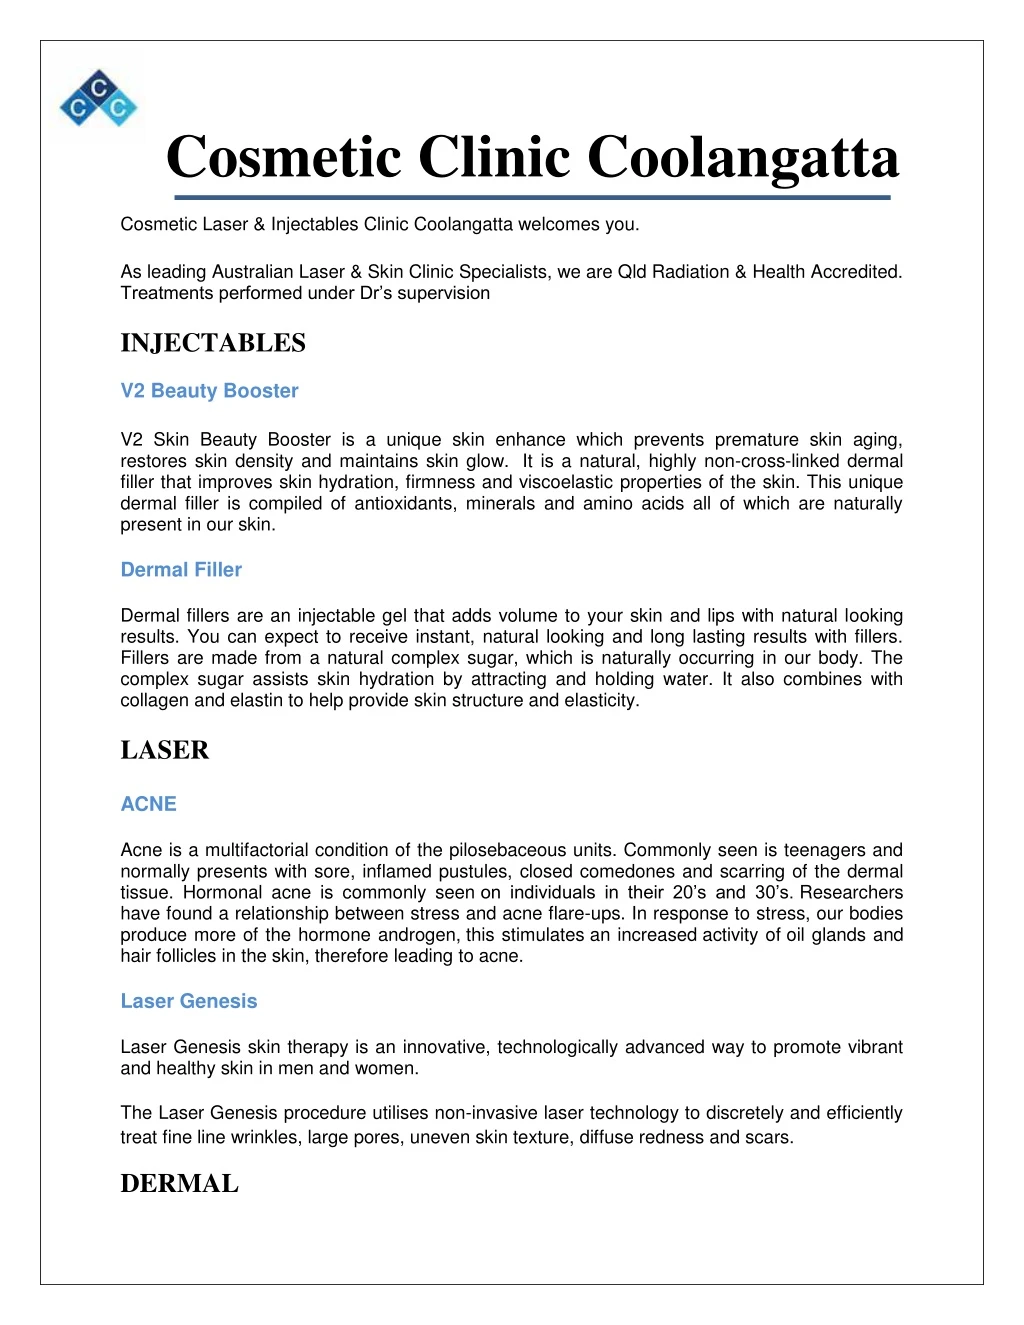 cosmetic clinic coolangatta